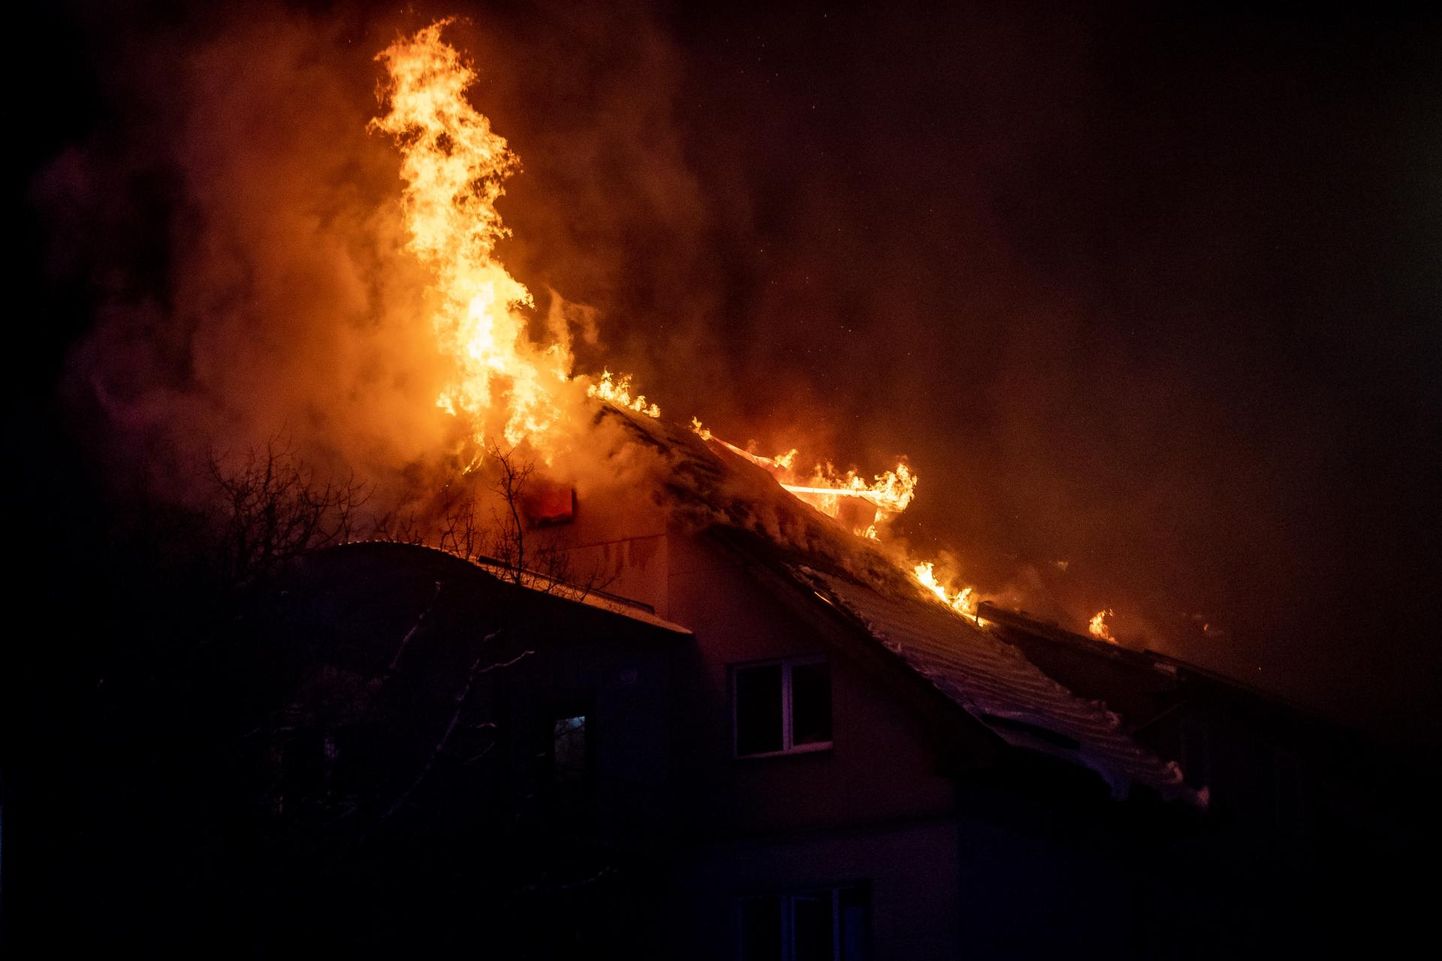 Vinni vallas põles elumaja. Põlenud hoones oli ka hukkunu. Foto on illustratiivne.